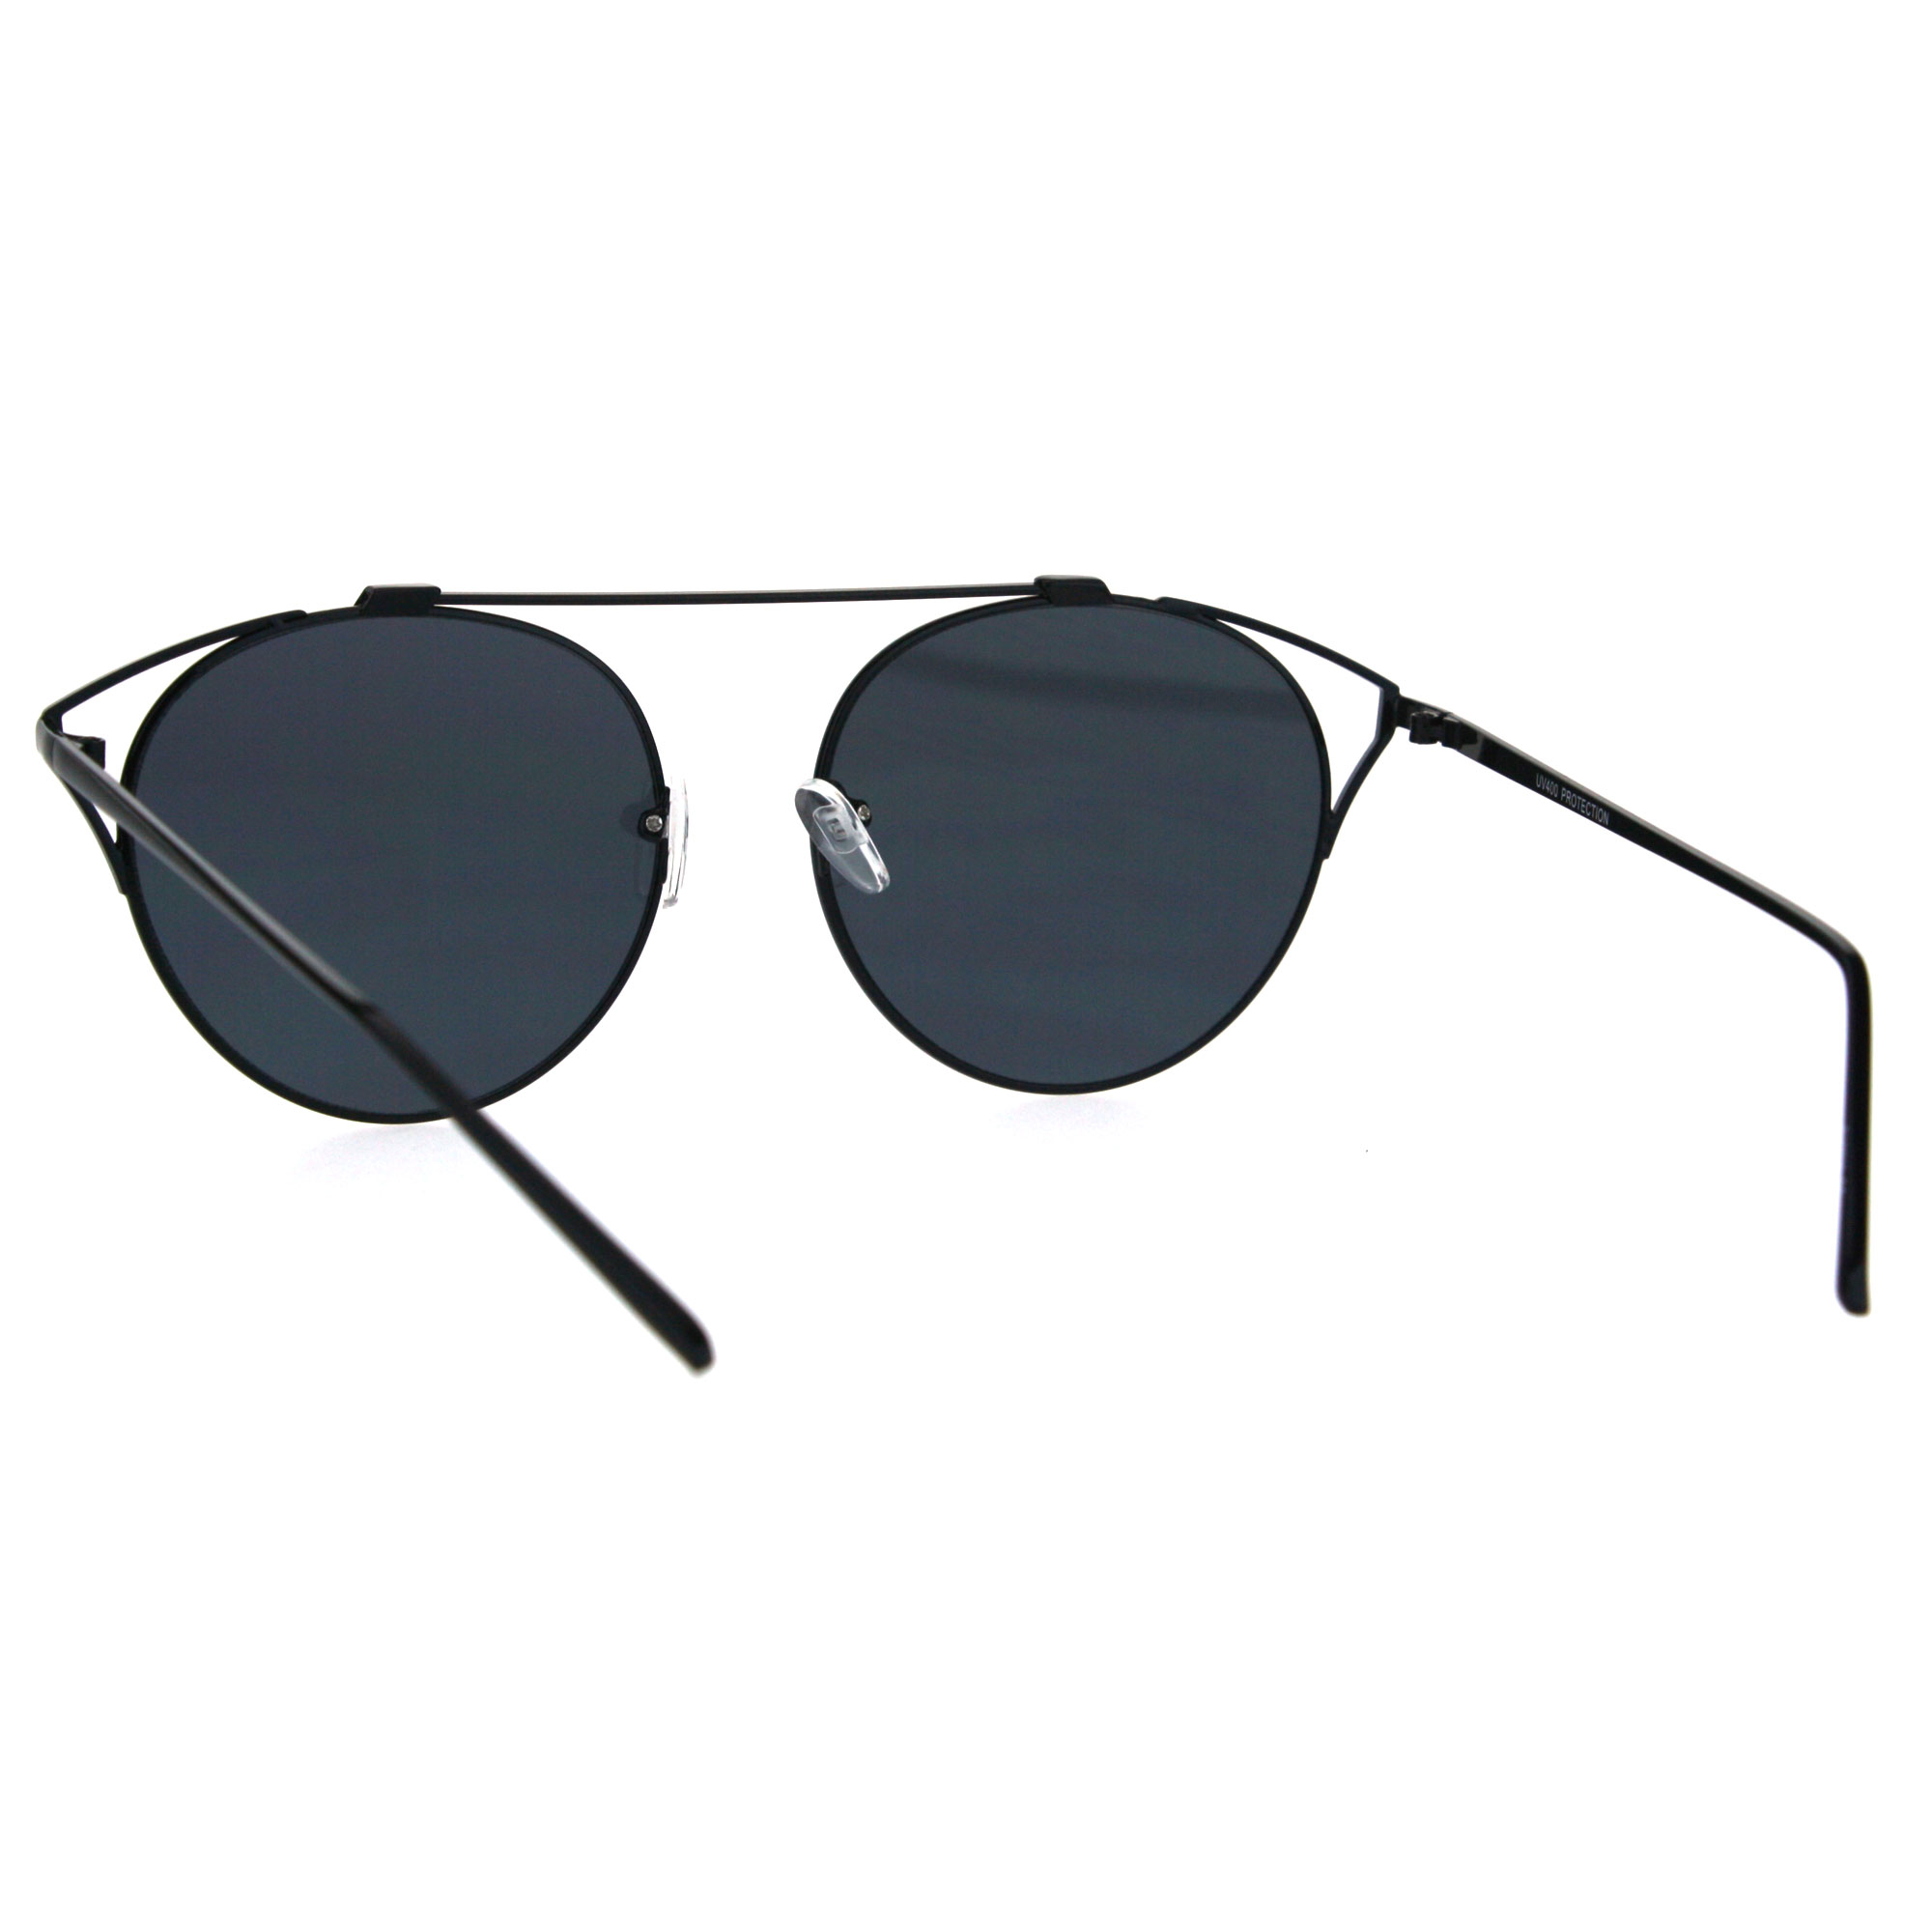 Bridgeless Top Flat Bridge Unique Retro Design Metal Horn Rim Sunglasses